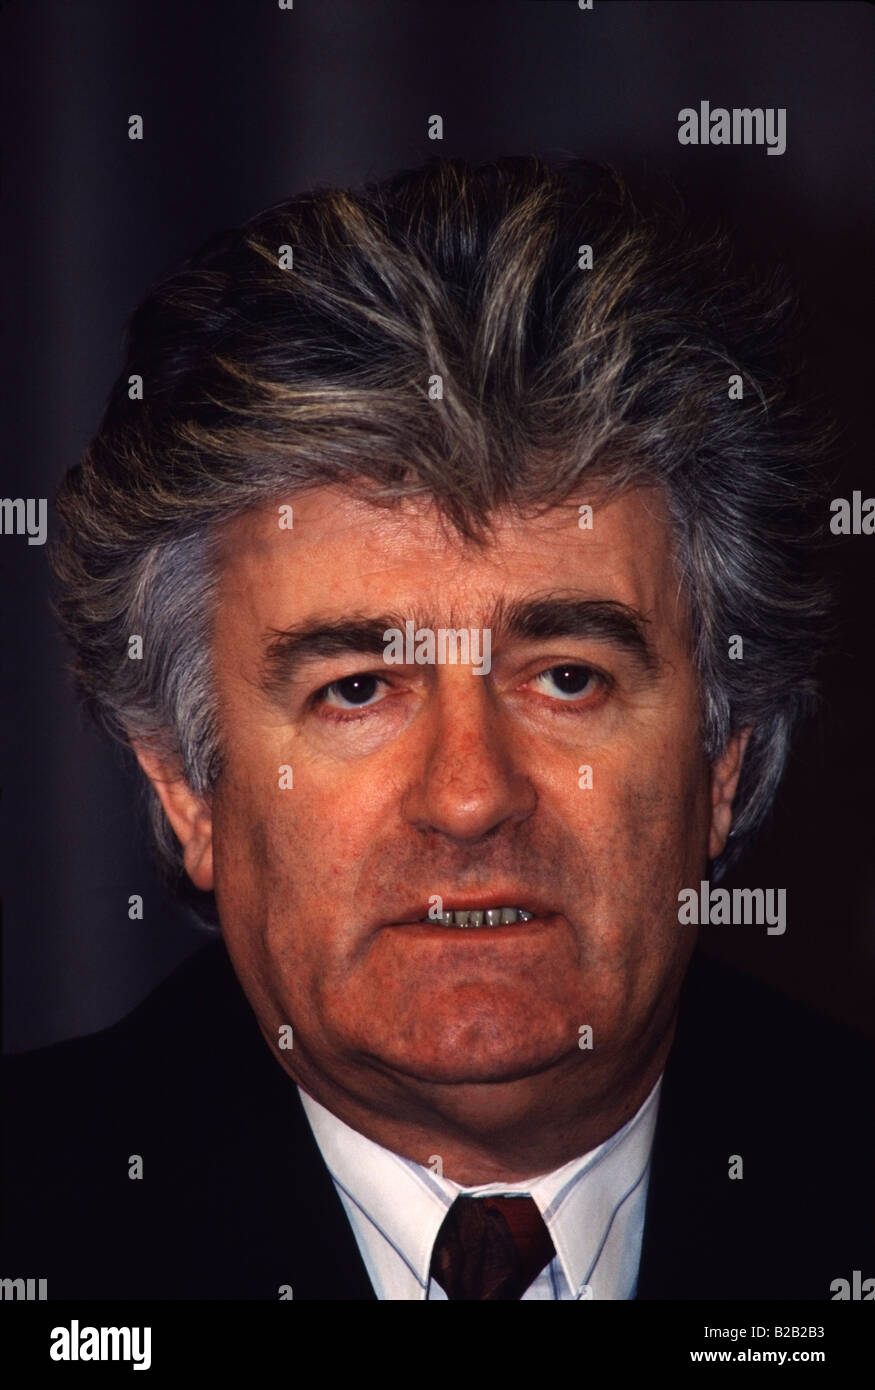 Ehemalige bosnische Serbenführer Radovan Karadzic wurde wegen Verbrechen gegen die Menschlichkeit durch eine UNO-Tribunal verurteilt 24.03.2016 Stockfoto